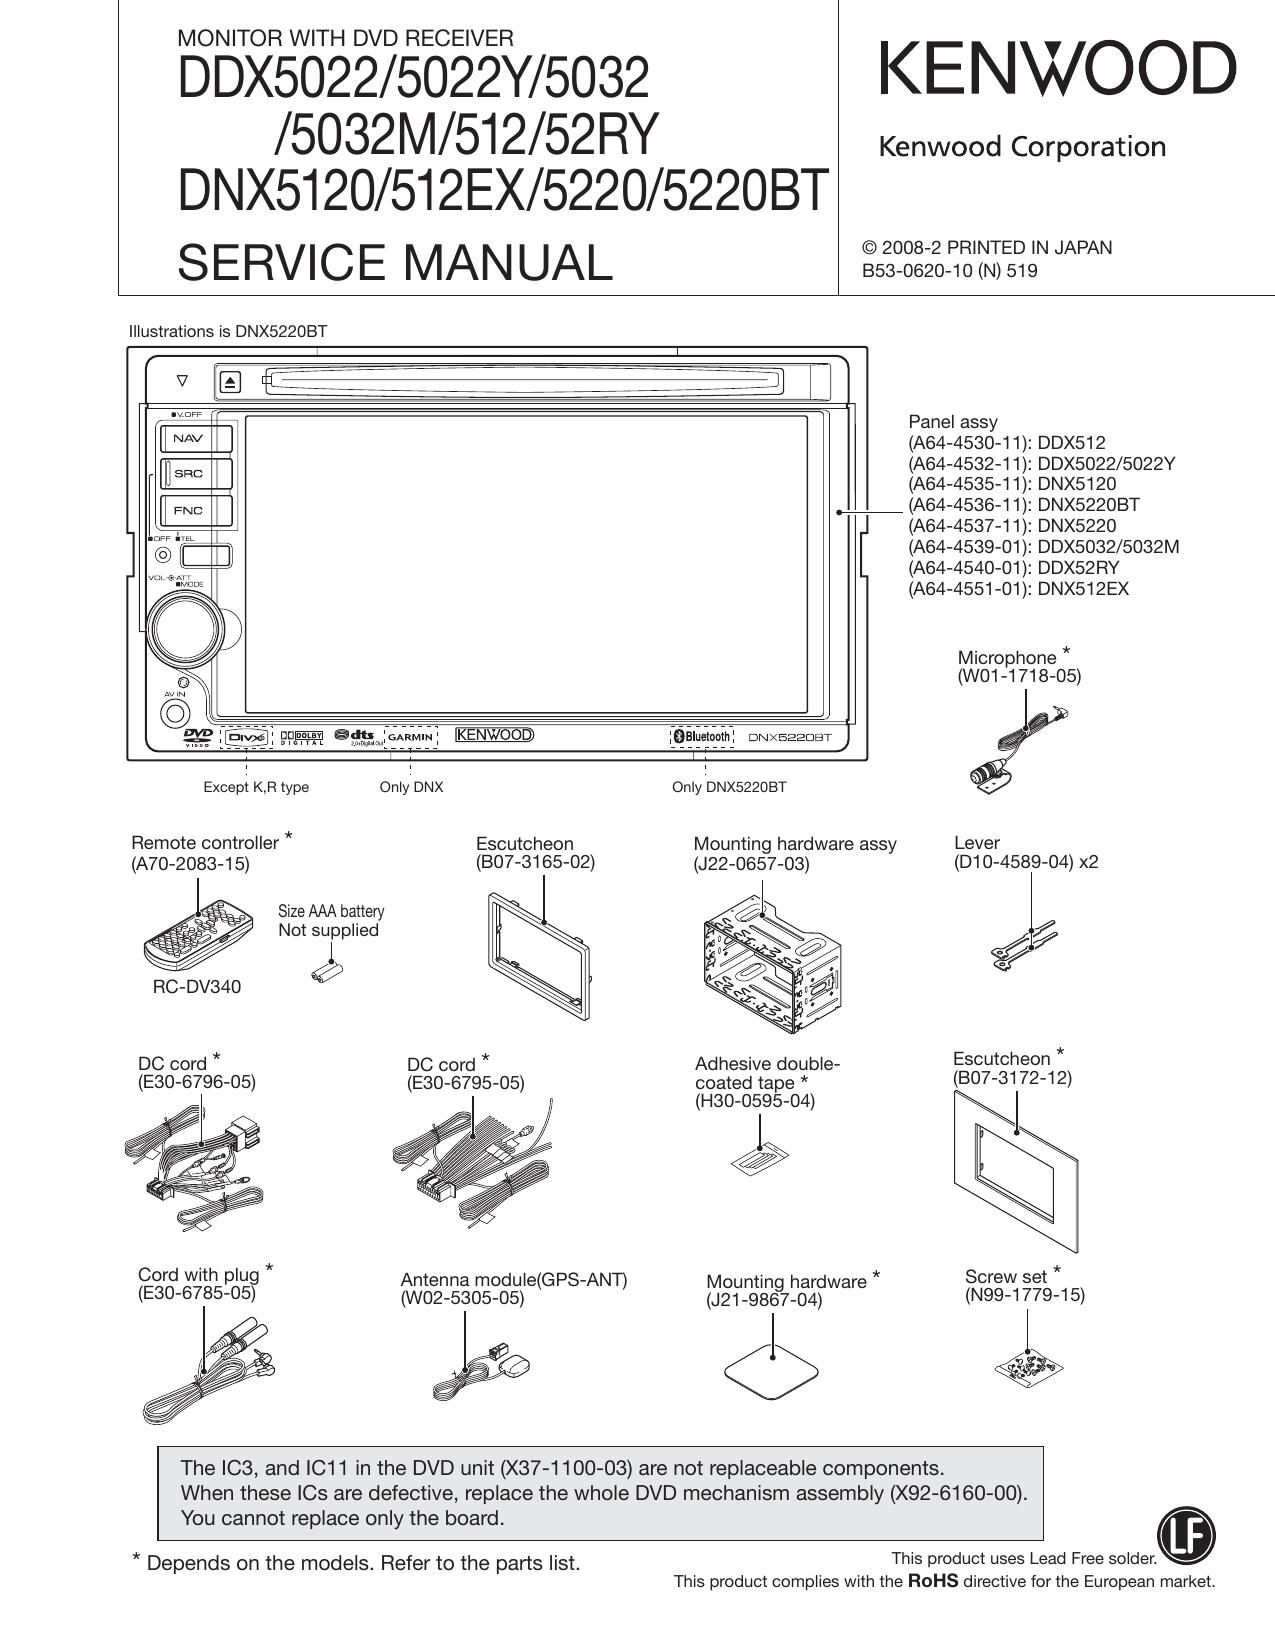 Kenwood DDX 5022 Y HU Service Manual